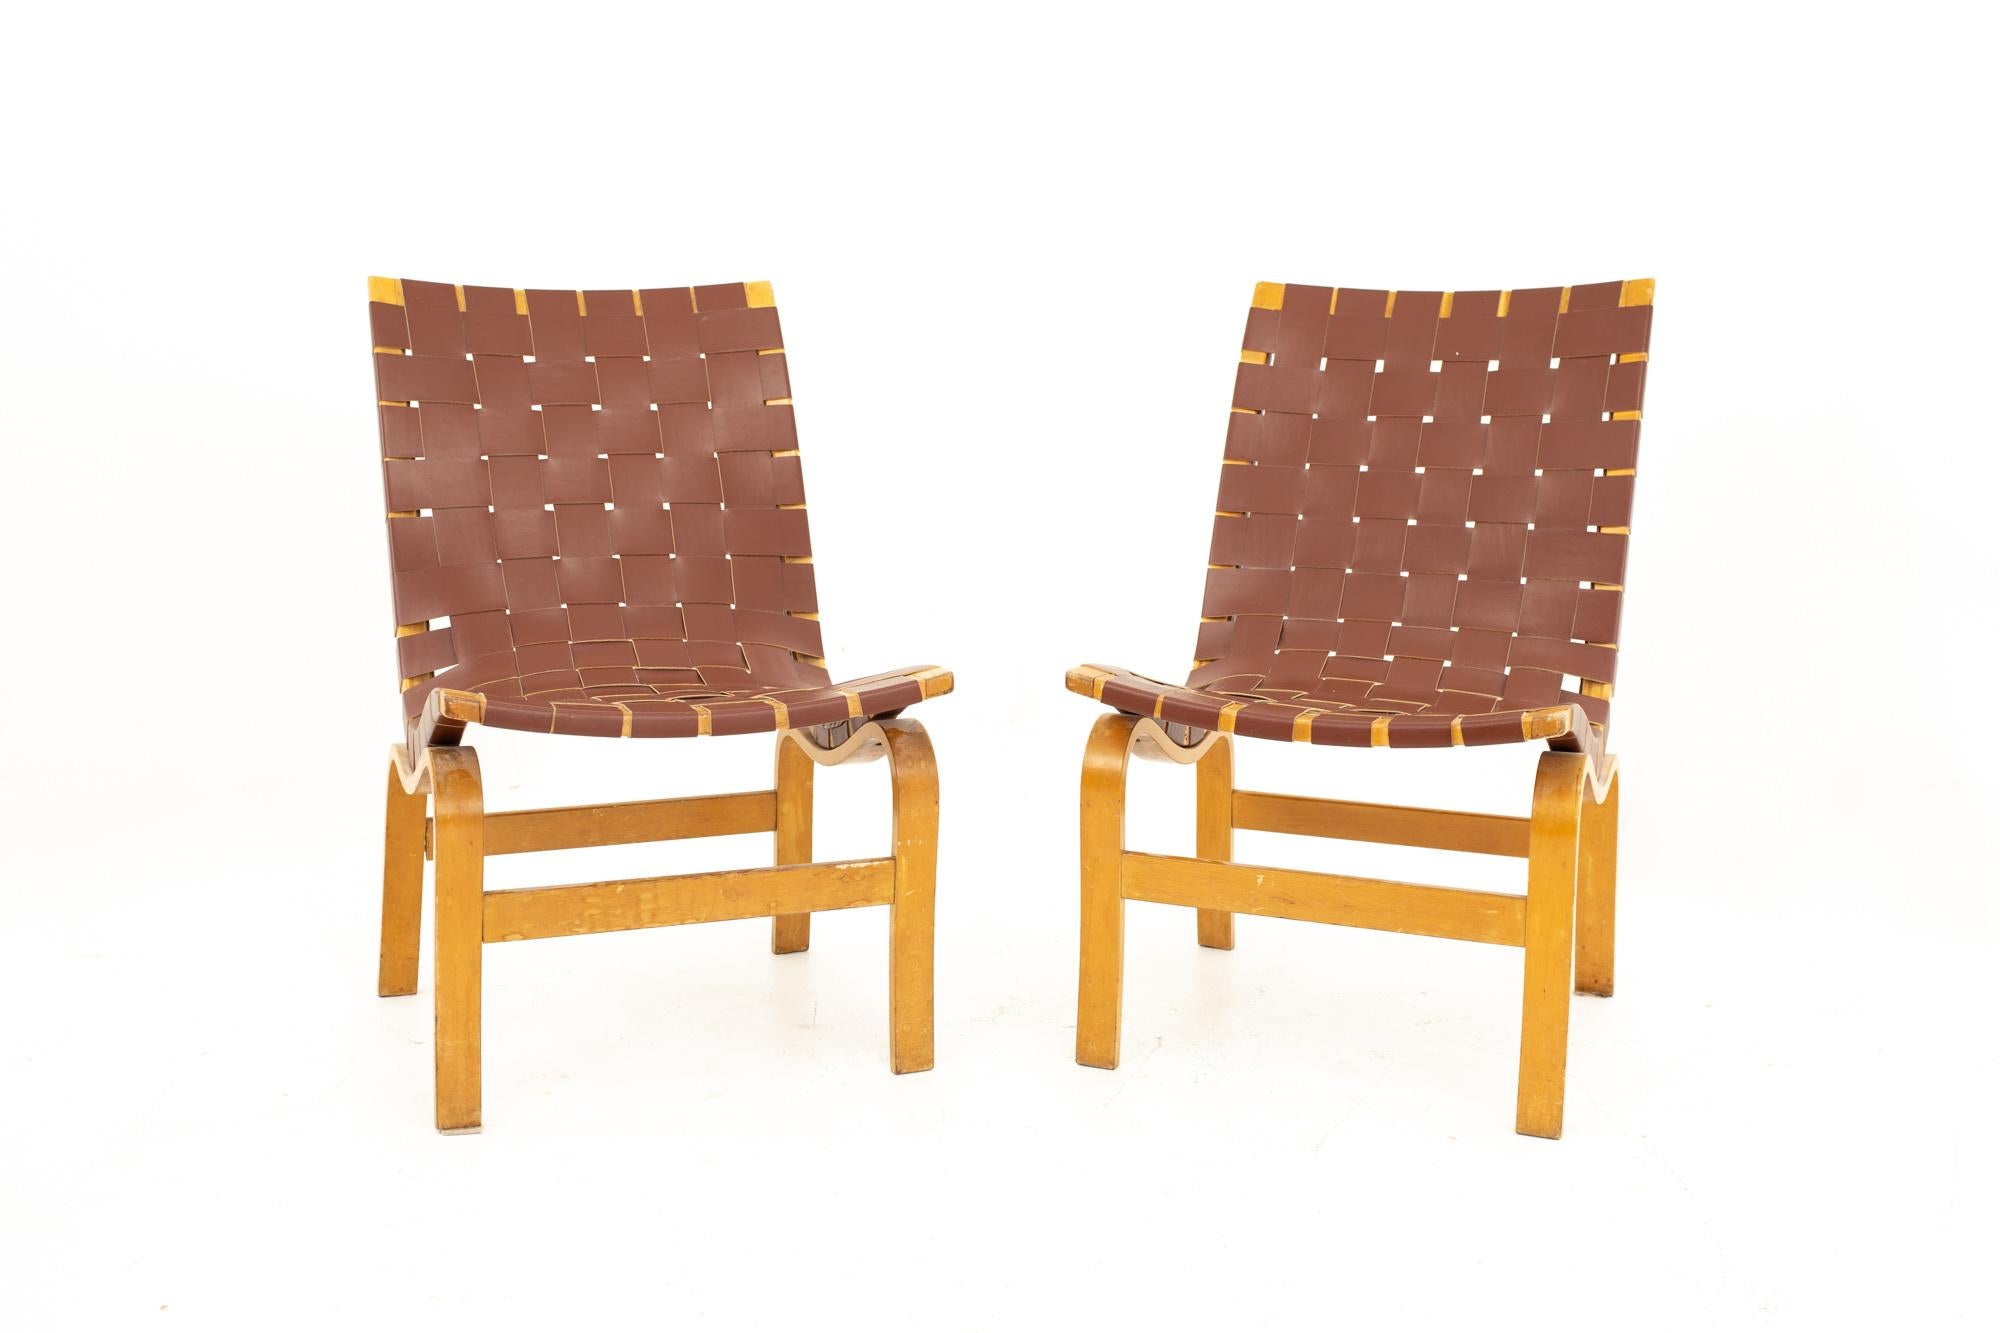 Bruno Mathsson Modell 41 Eva Mid Century Sessel, Paar
Jeder Stuhl misst: 16.5 breit x 27 tief x 32 hoch mit einer Sitzhöhe von 17,5 Zoll

Alle Möbelstücke sind in einem so genannten restaurierten Vintage-Zustand zu haben. Das bedeutet, dass das